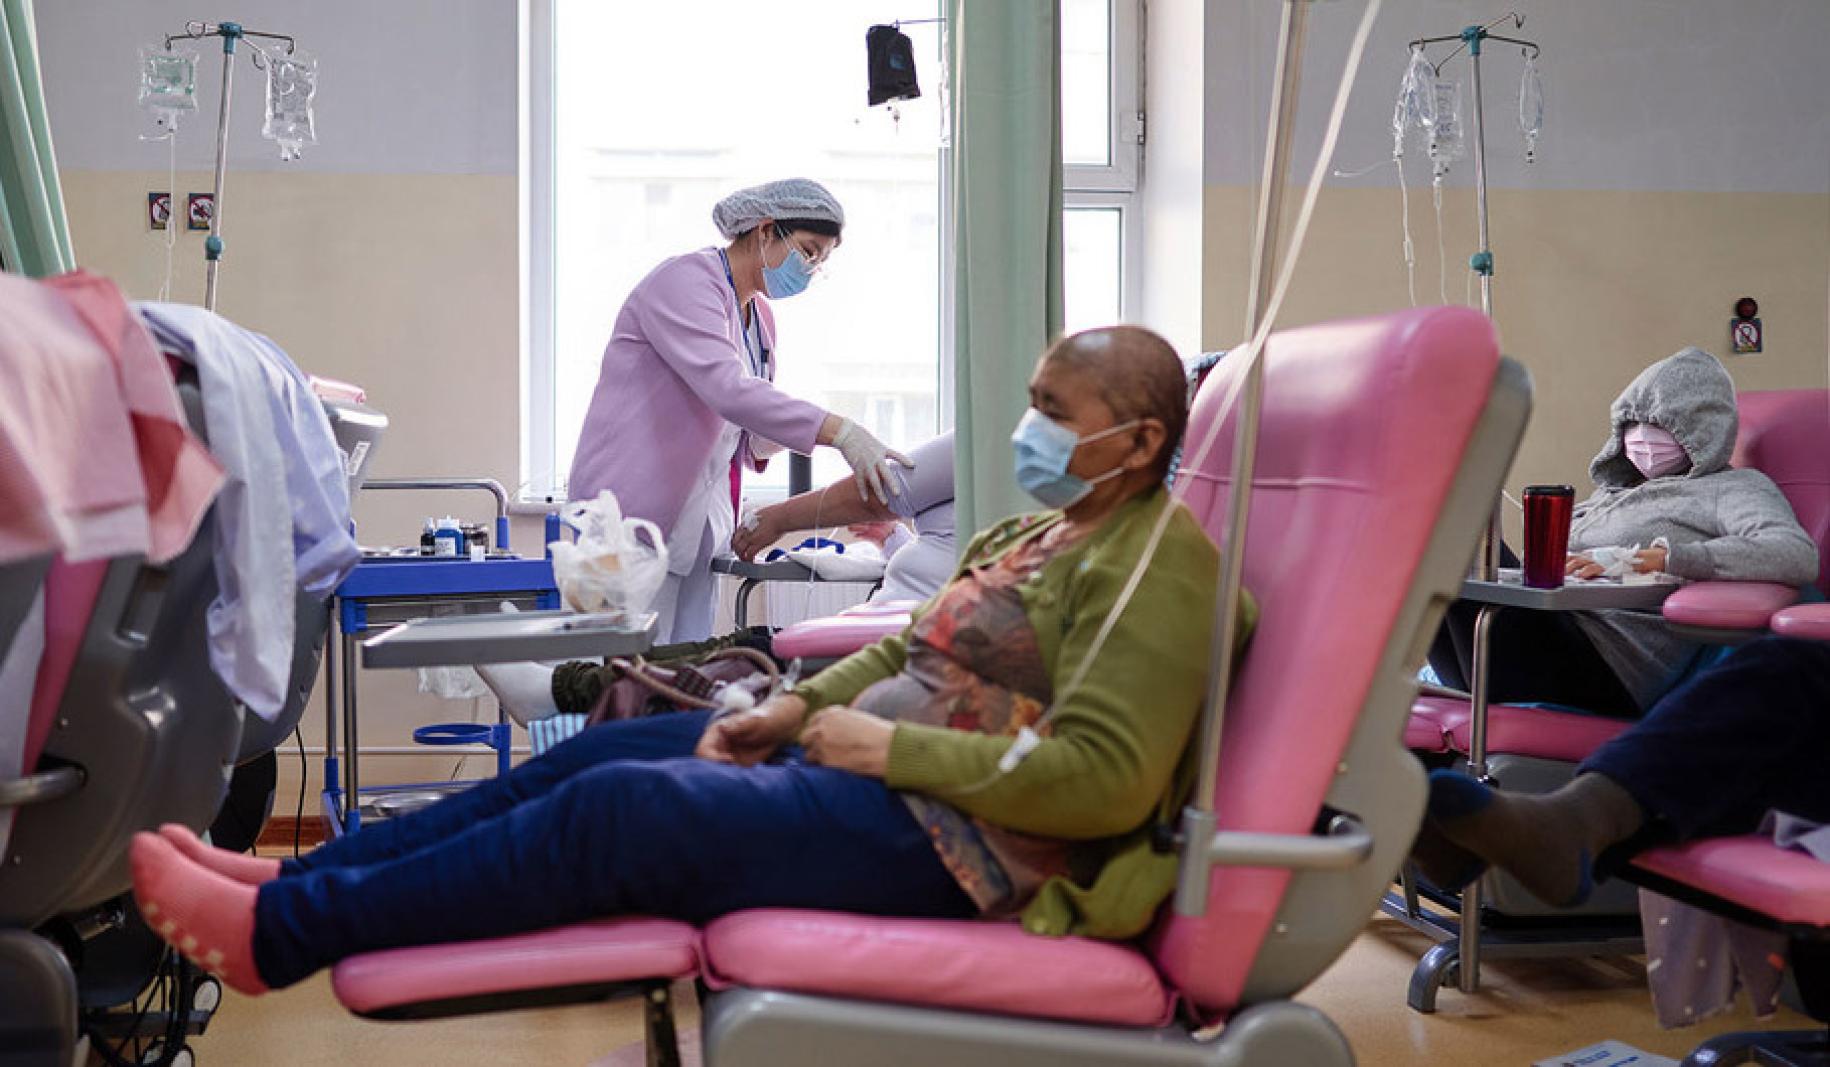 En un consultorio médico, una persona se sienta en una silla rosa y recibe un medicamento por vía intravenosa.